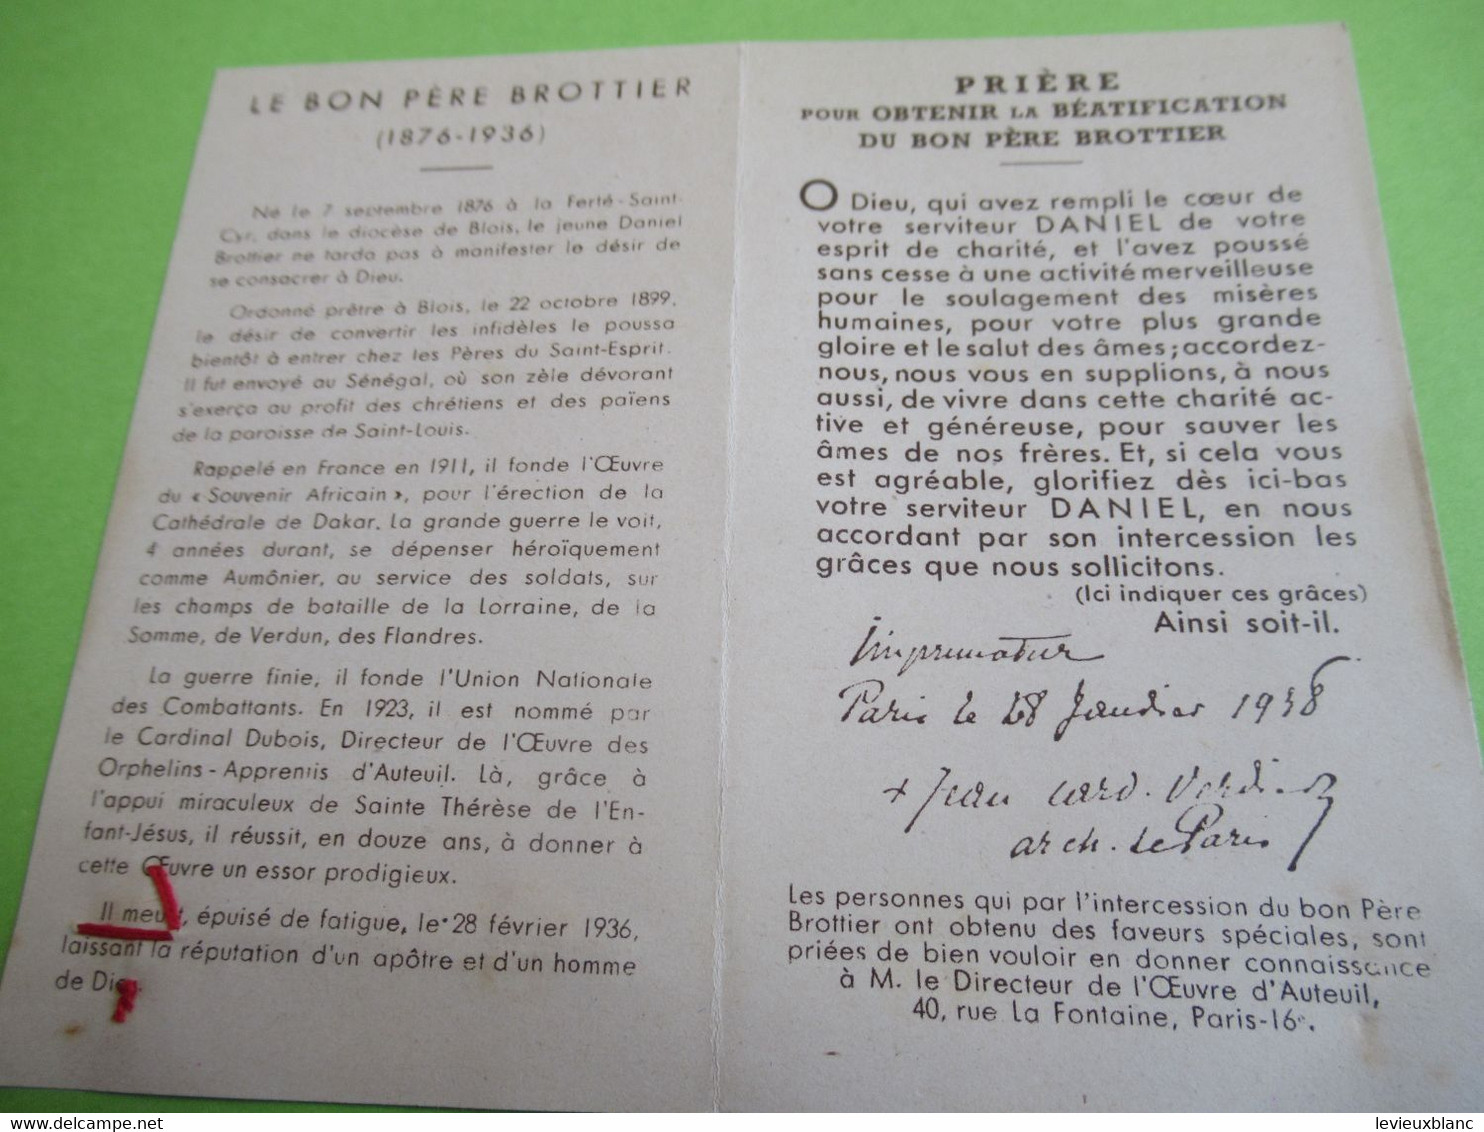 Image Pieuse Ancienne/Le Pére Daniel Brottier/Etoffe Ayant Touché/Cardinal Verdier Archevêque De Paris/1938 IMP106quatro - Religion & Esotérisme